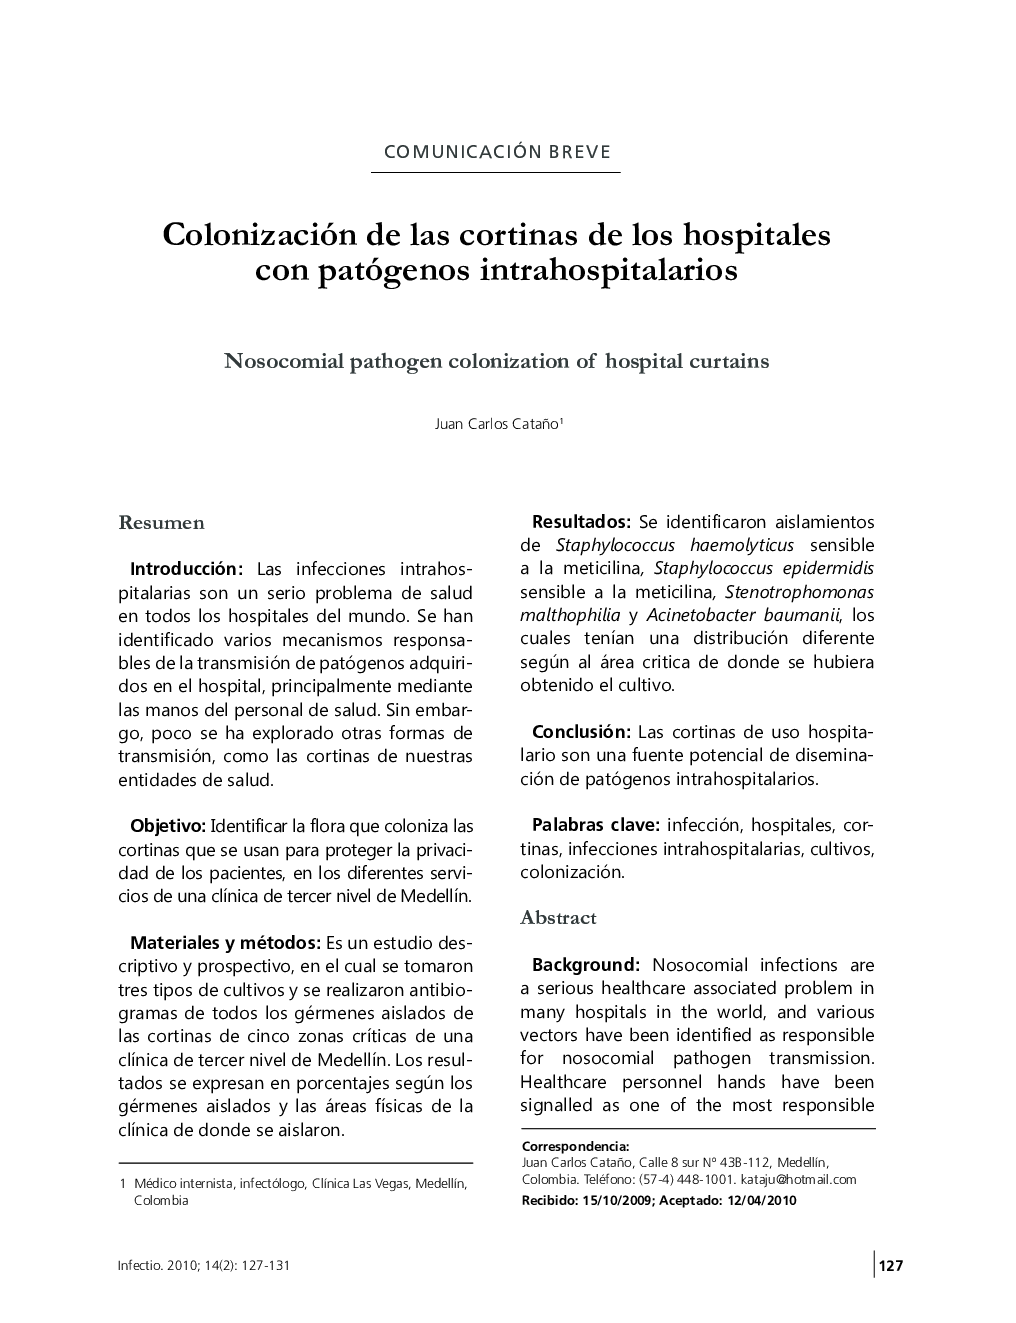 Colonización de las cortinas de los hospitales con patógenos intrahospitalarios